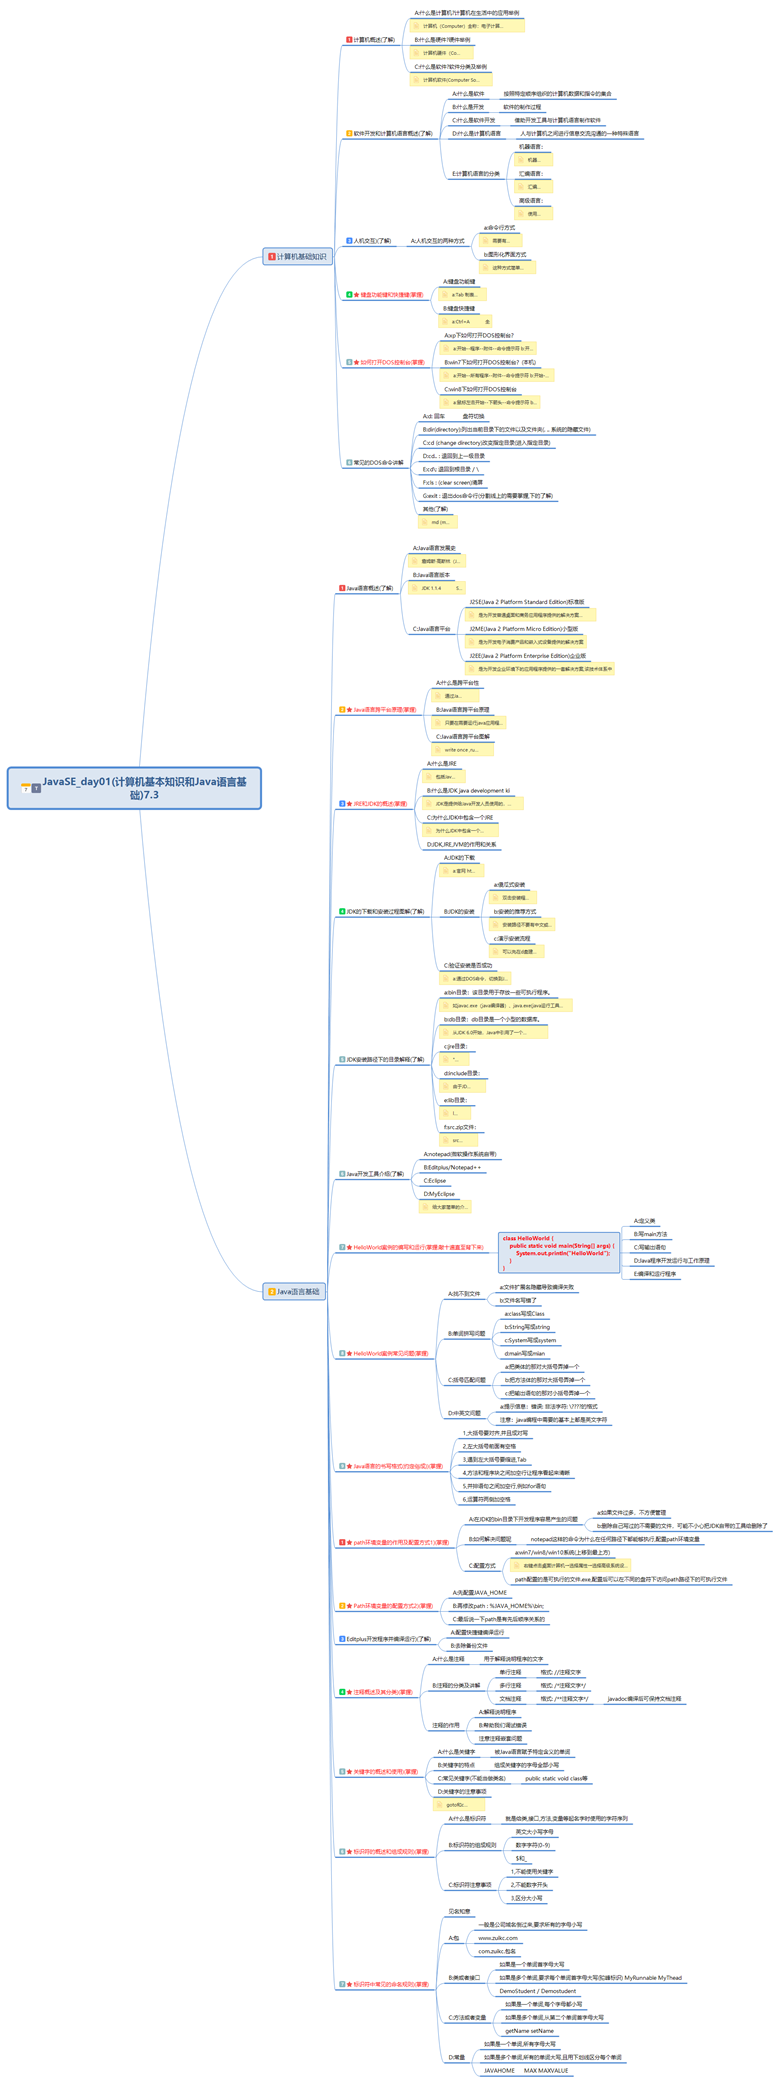 安利一款强大的学习软件XMind(顺便放上这几天制作的JavaSE的思维导图day1